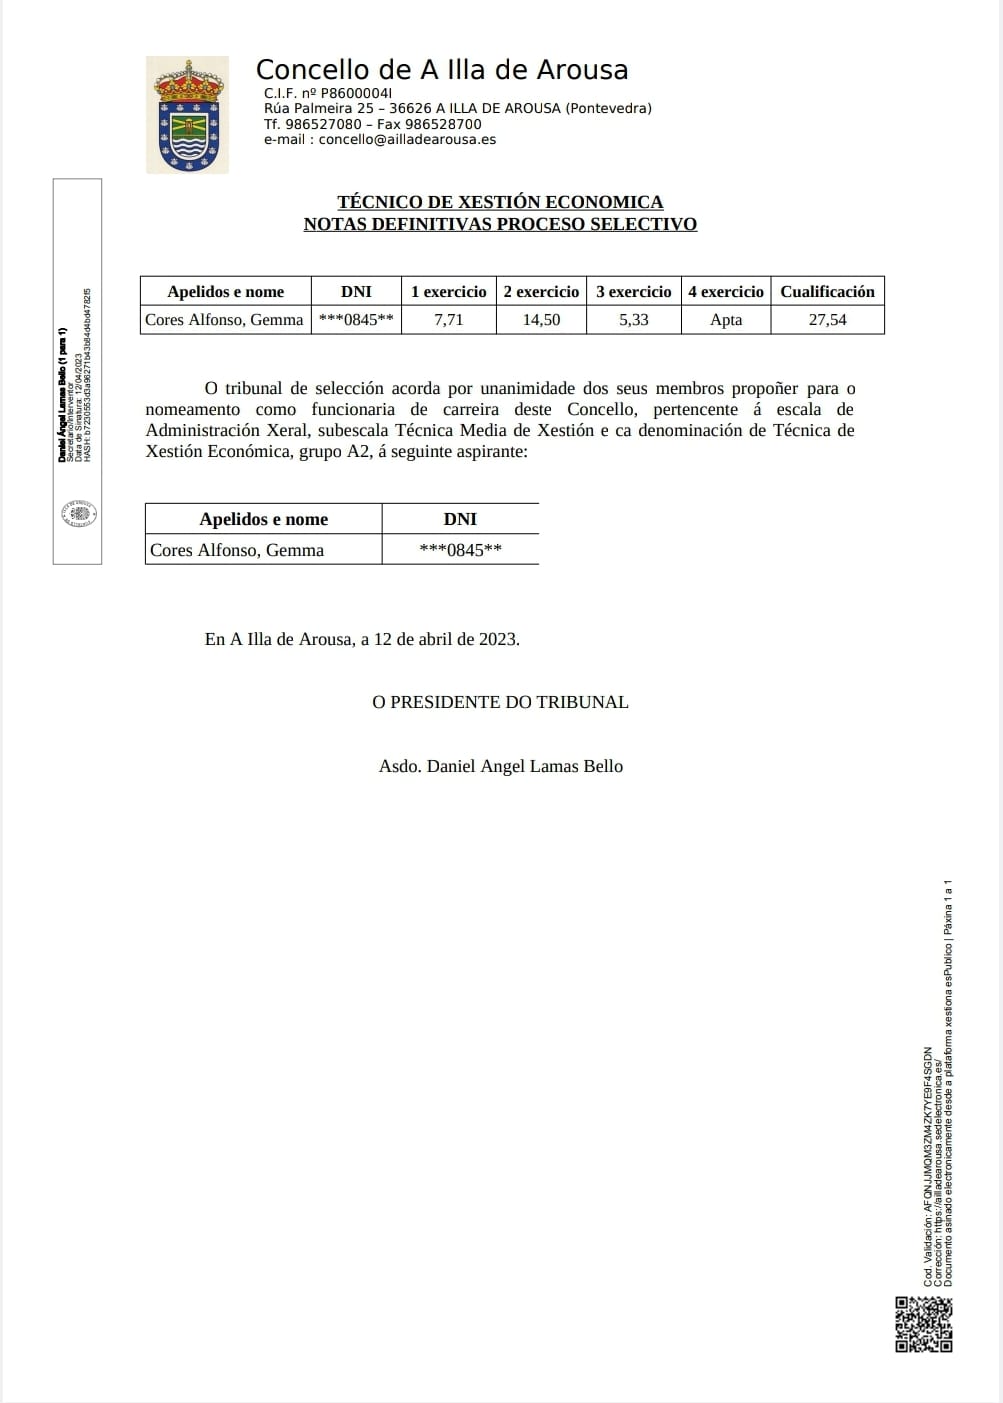 TÉCNICO DE XESTIÓN ECONOMICA NOTAS DEFINITIVAS PROCESO SELECTIVO